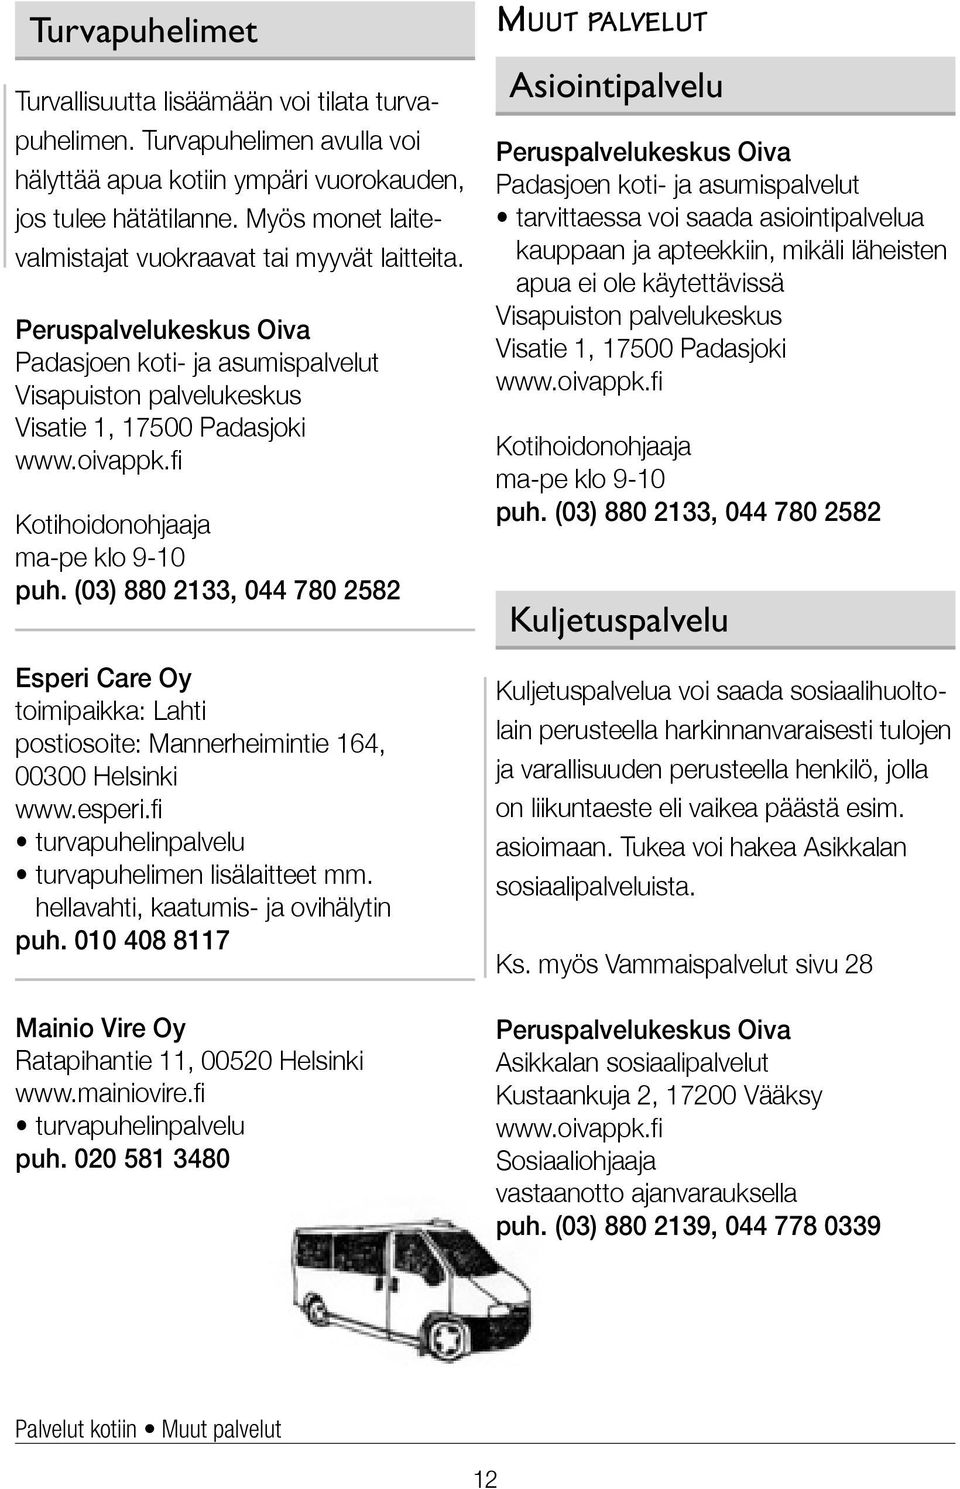 (03) 880 2133, 044 780 2582 Esperi Care Oy toimipaikka: Lahti postiosoite: Mannerheimintie 164, 00300 Helsinki www.esperi.fi turvapuhelinpalvelu turvapuhelimen lisälaitteet mm.